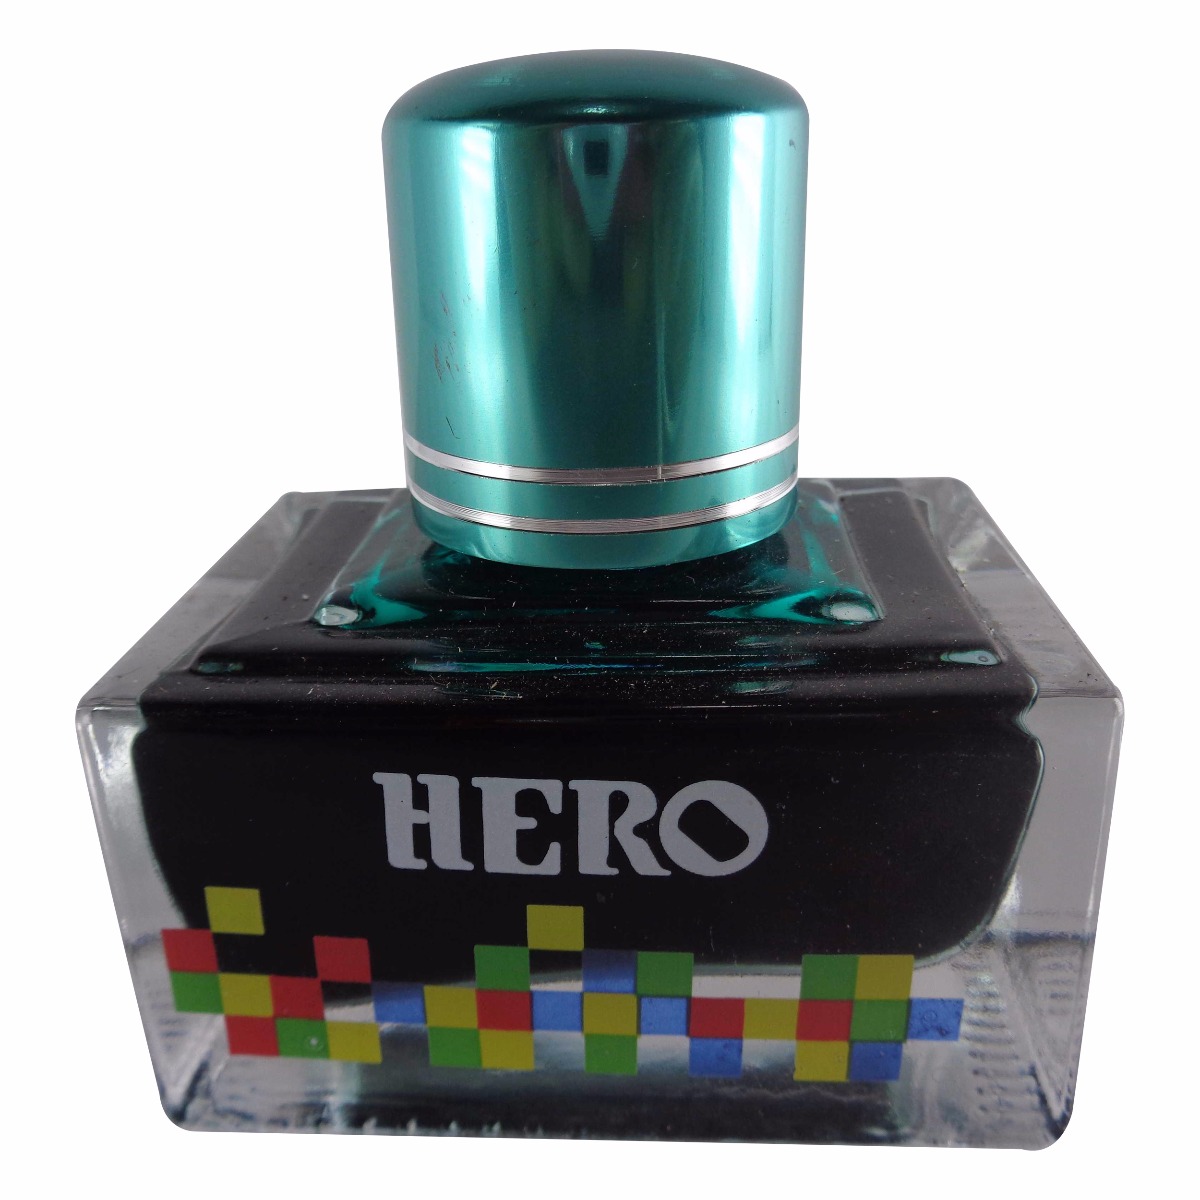 Hero No. 7107  Model: 70028 Extra color ink Green color ink bottle